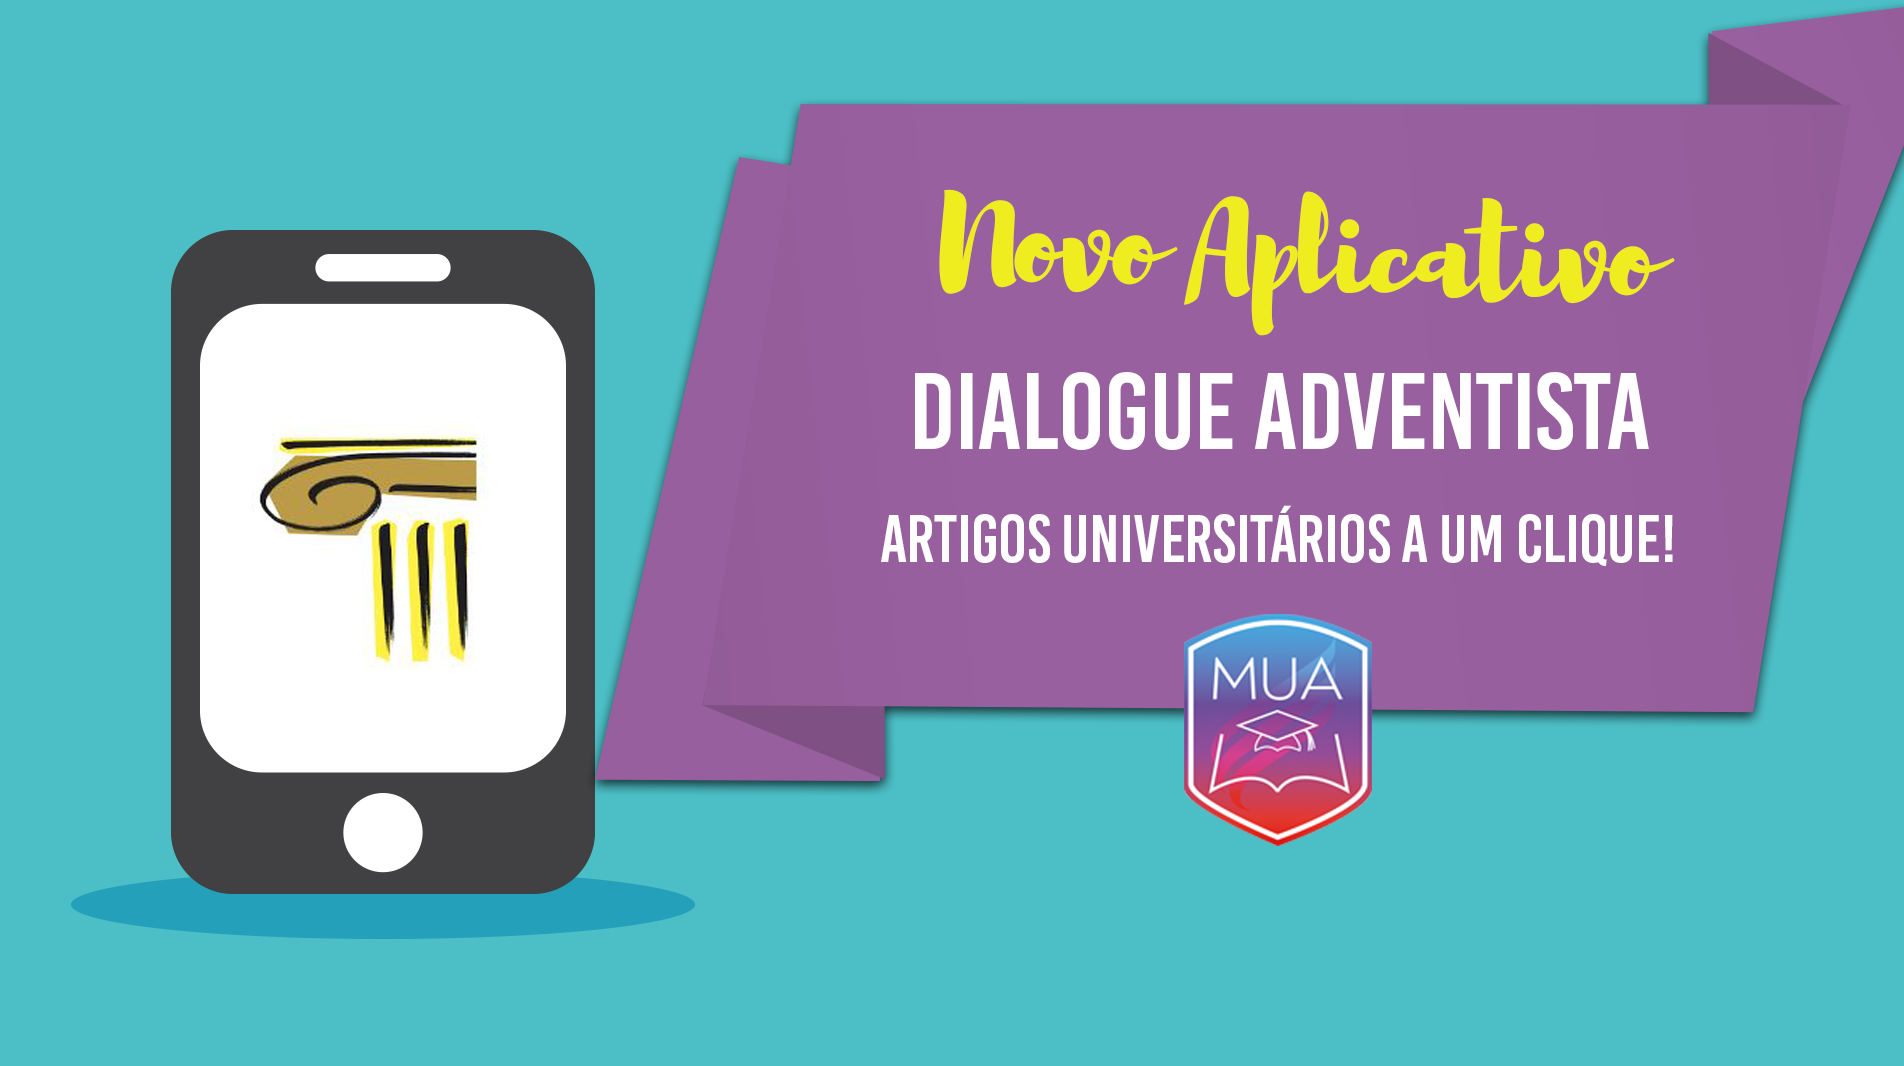 Aplicativo Dialogue Adventist - Universitários